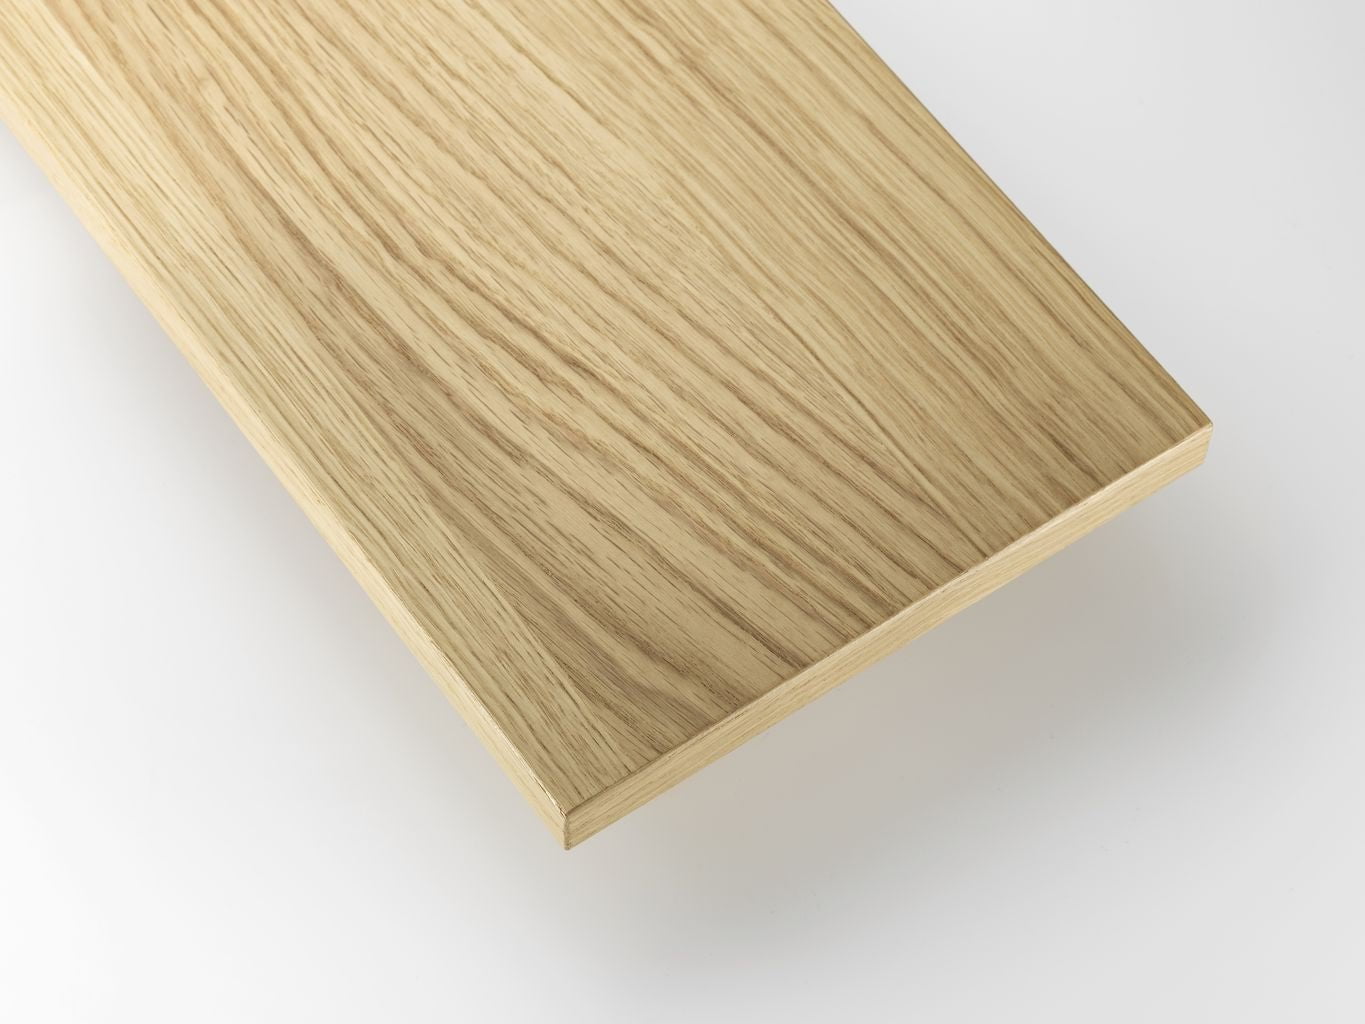 Sistema de muebles de cuerda Estante de madera Estante de madera Ash 30x78 cm, conjunto de 3